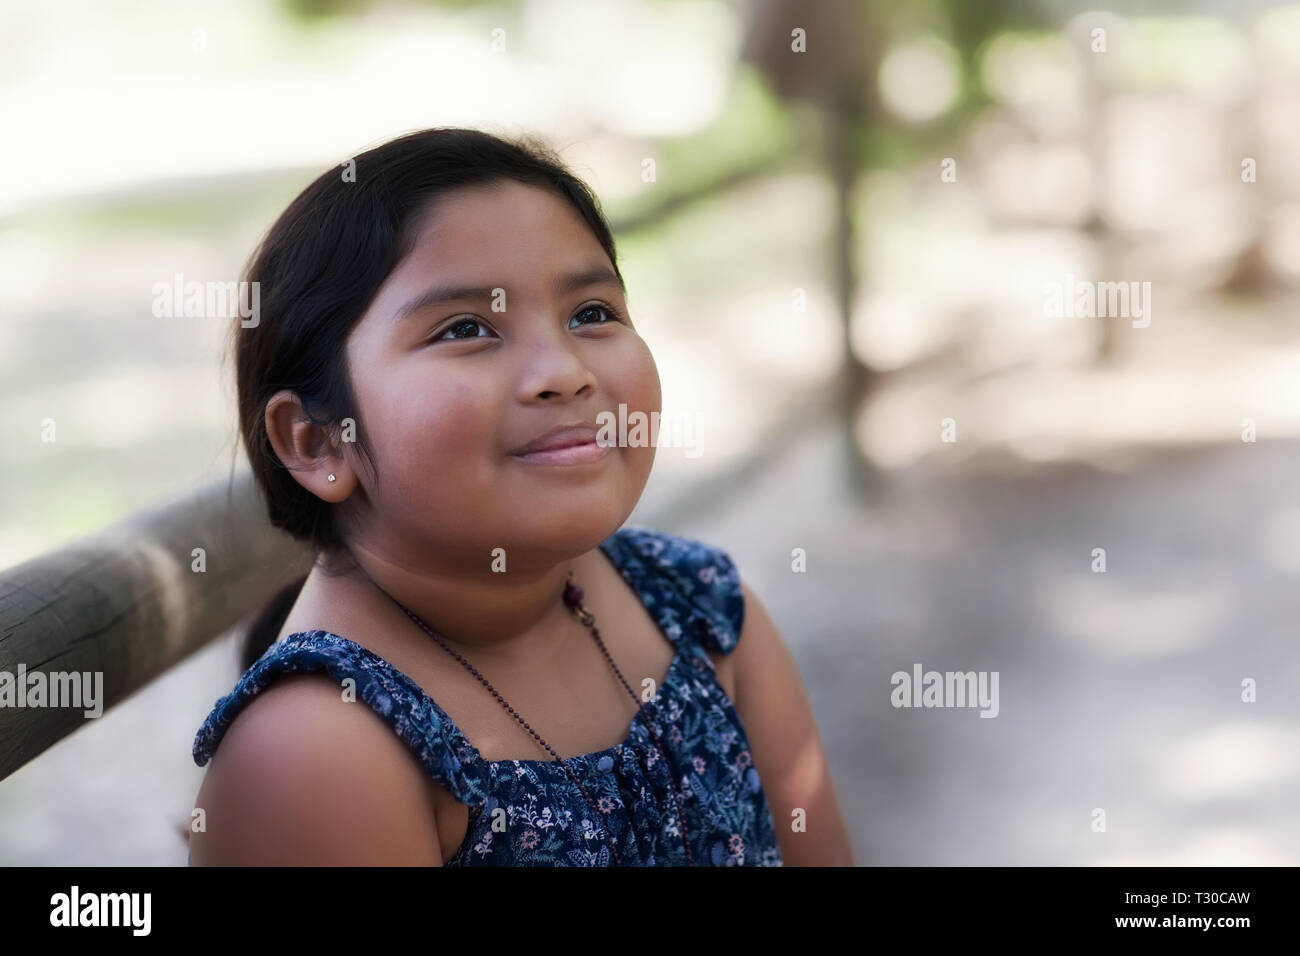 Süße 8 jährige Mädchen gemischter ethnischer Zugehörigkeit, starrte in den Himmel mit einem nachdenklichen Blick und in traditionellen Country Western gekleidet. Stockfoto